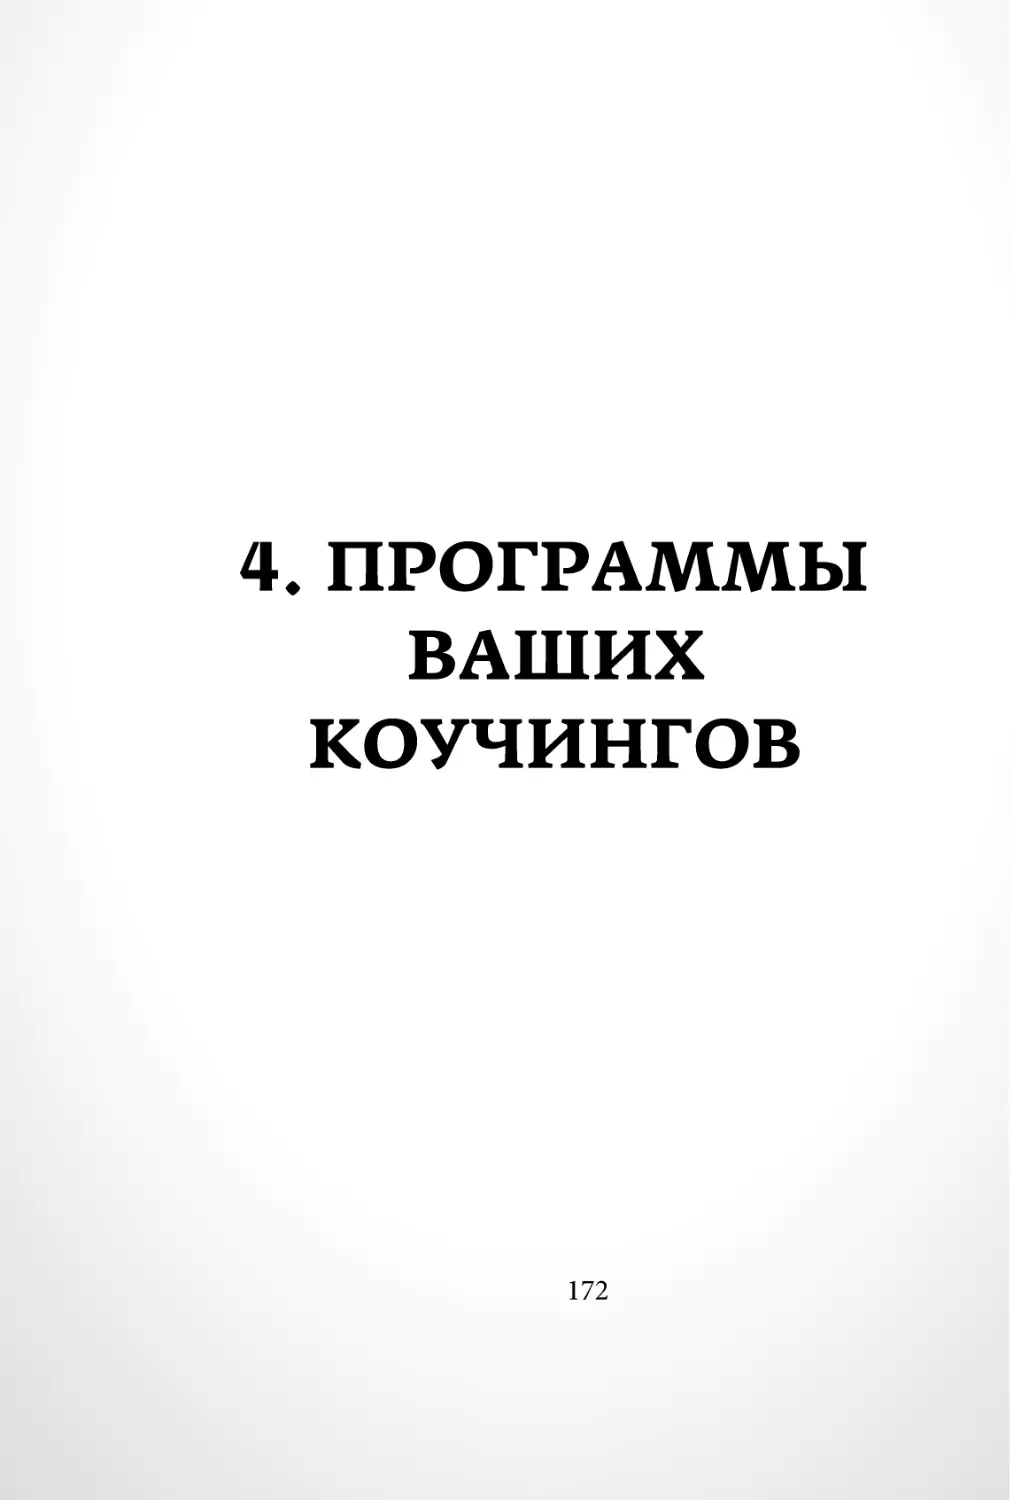 Sergey_Filippov_Dnevnik_samorazvitia_Evolyutsia_Vnutrennego_Sostoyania_172.pdf (p.172)